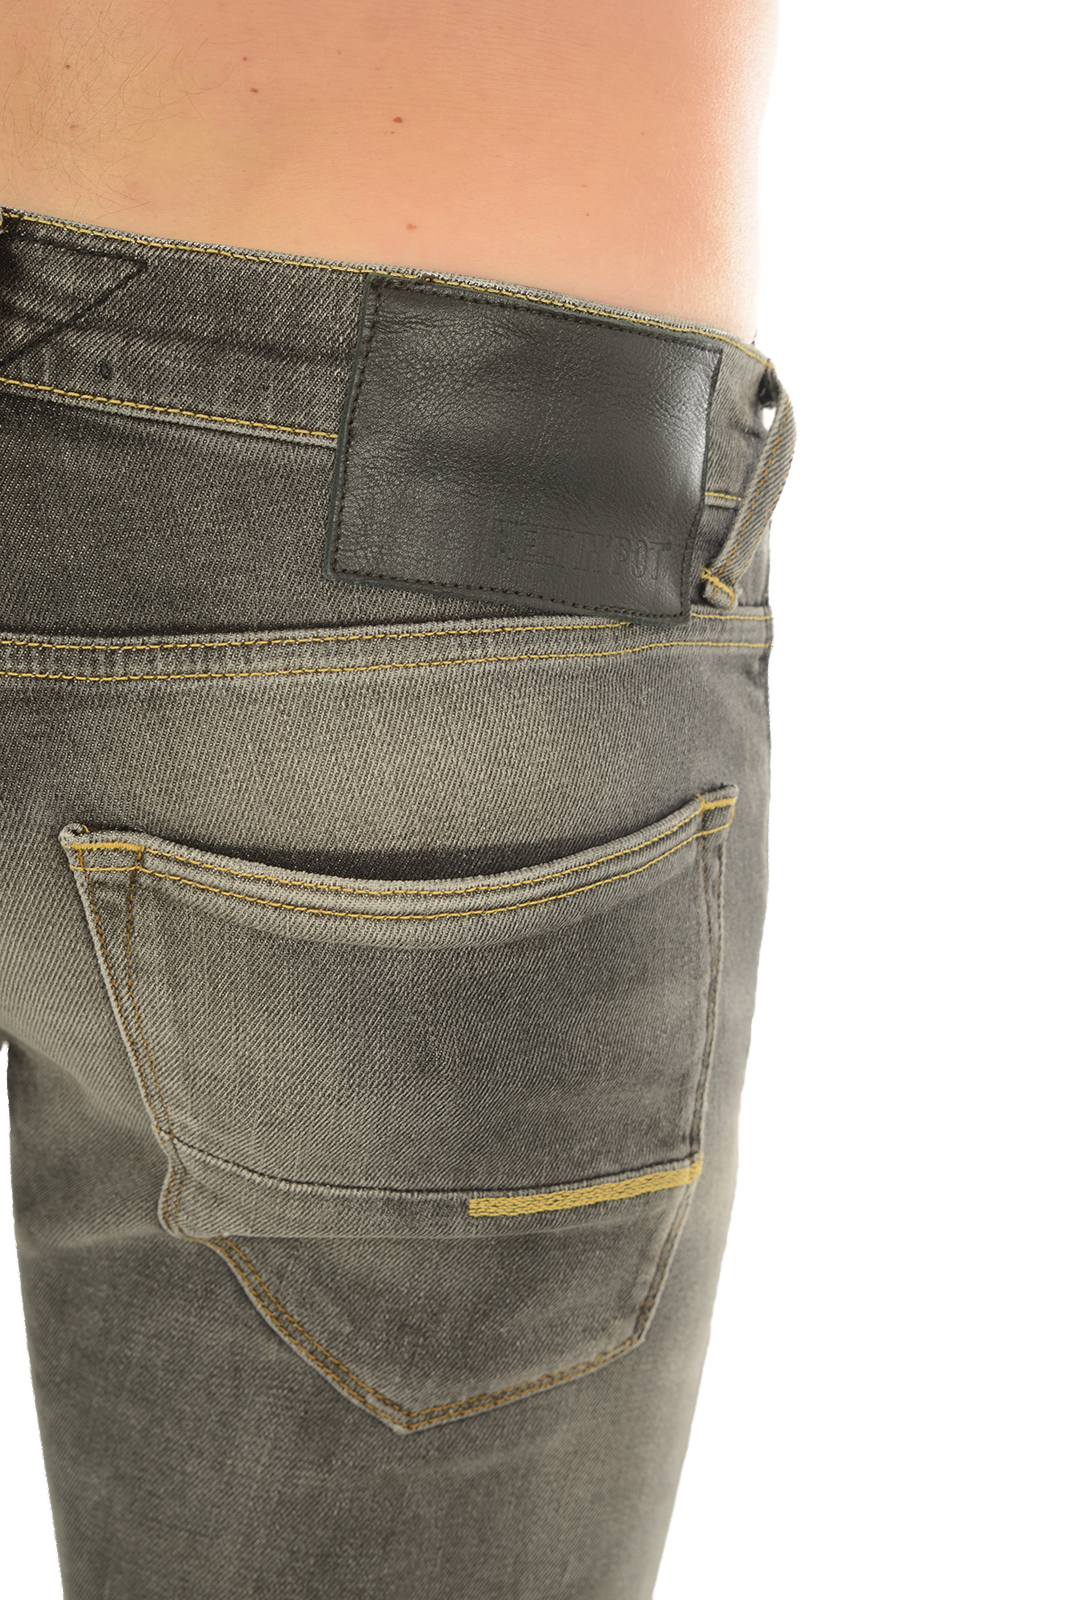 Jeans gris slim pour homme - Meltin Pot Mp002 D1573 Ub090